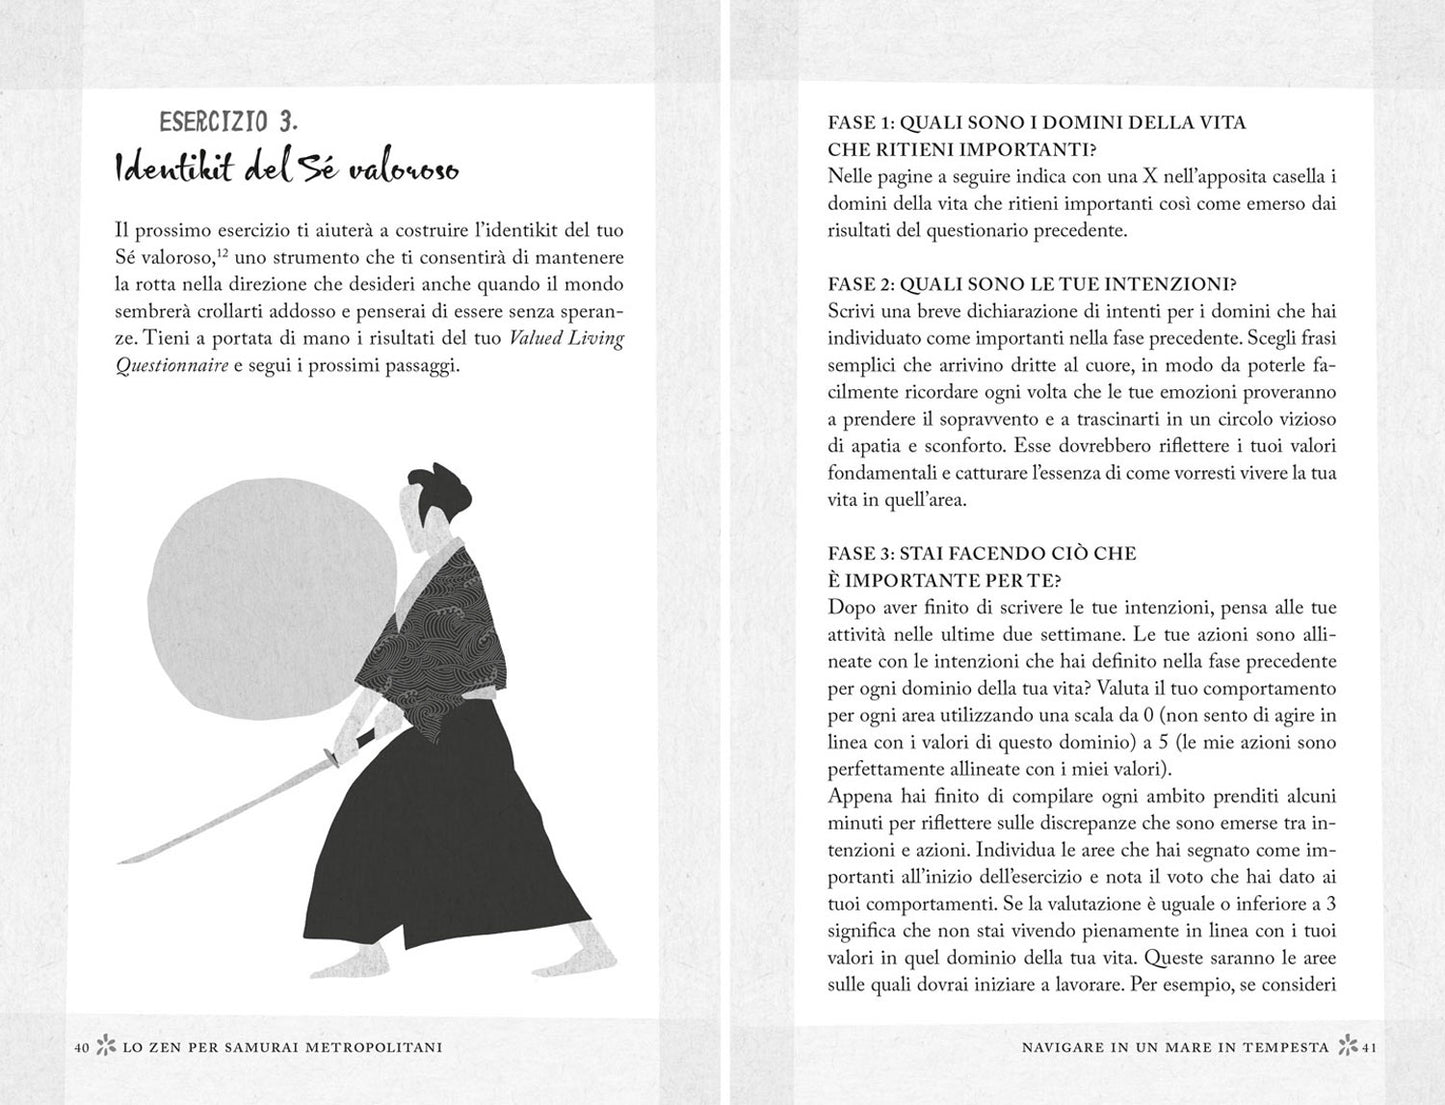 Lo zen per samurai metropolitani. Manuale di sopravvivenza contro stress, ansia e paure